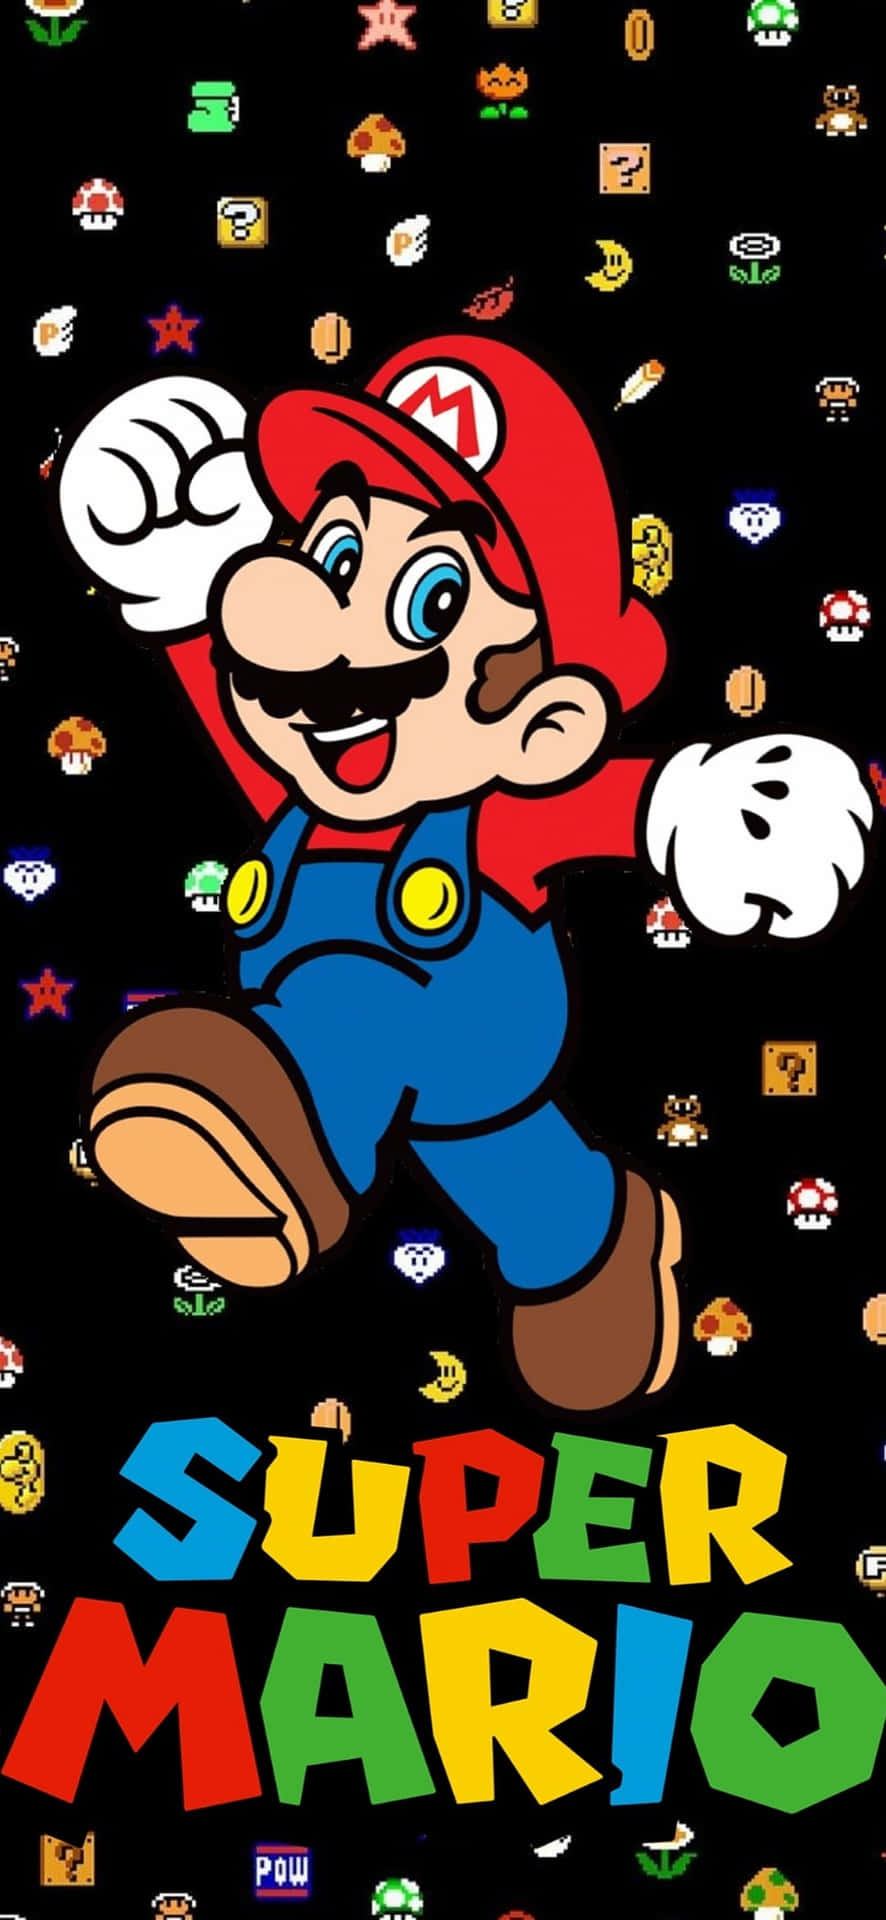 Caption: Super Mario Arcadia – The Mushroom Kingdom Twilight